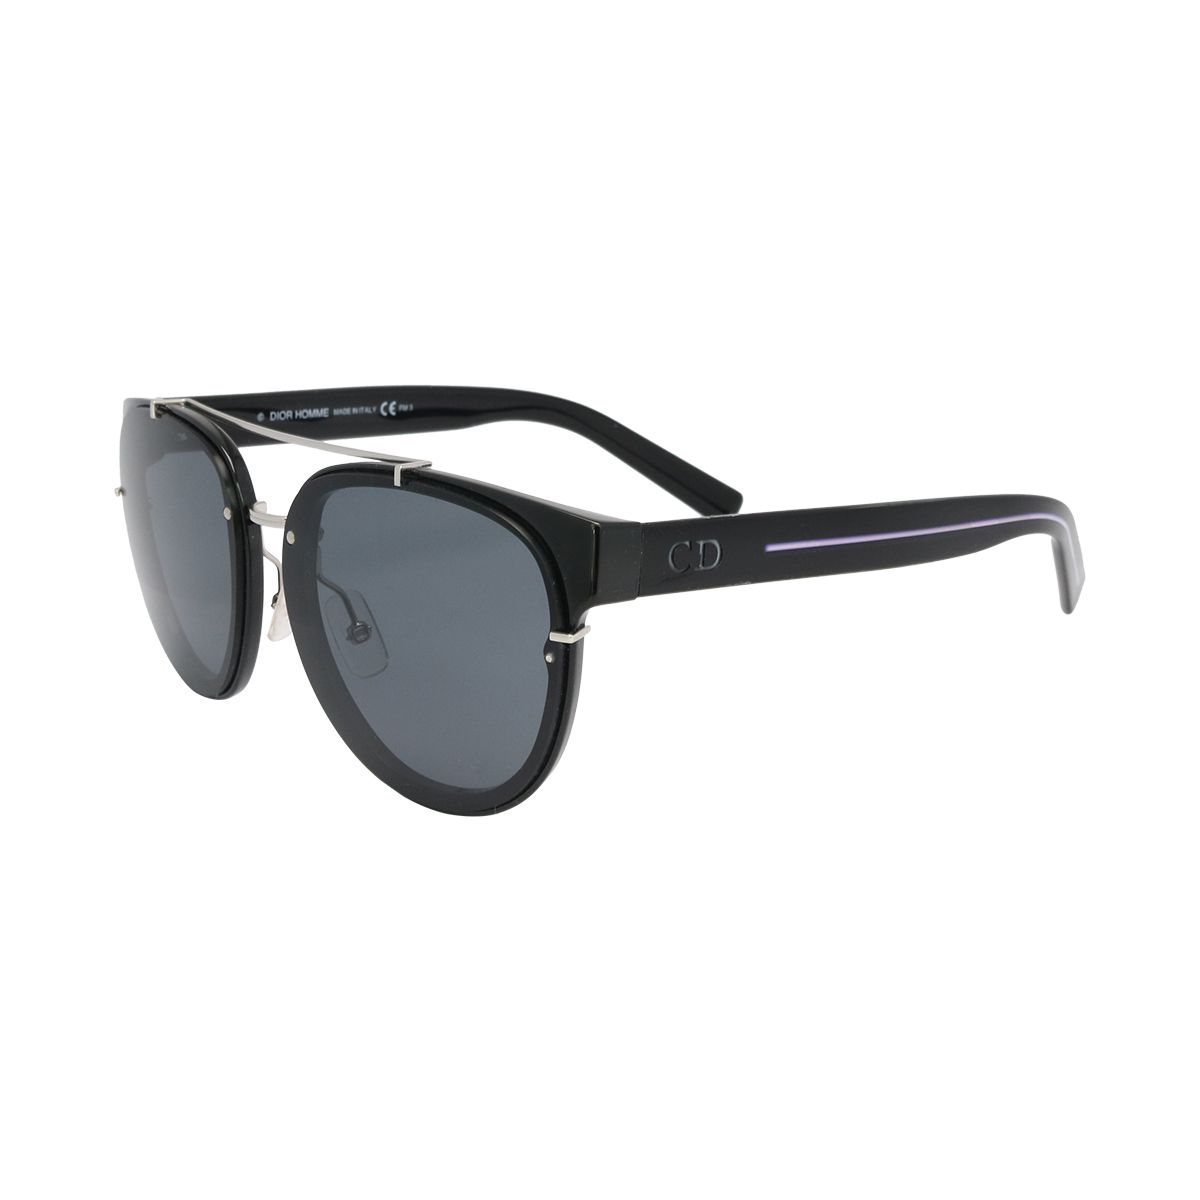 BLACKTIE0143S Panthos Sunglasses E3ZBN - size 56